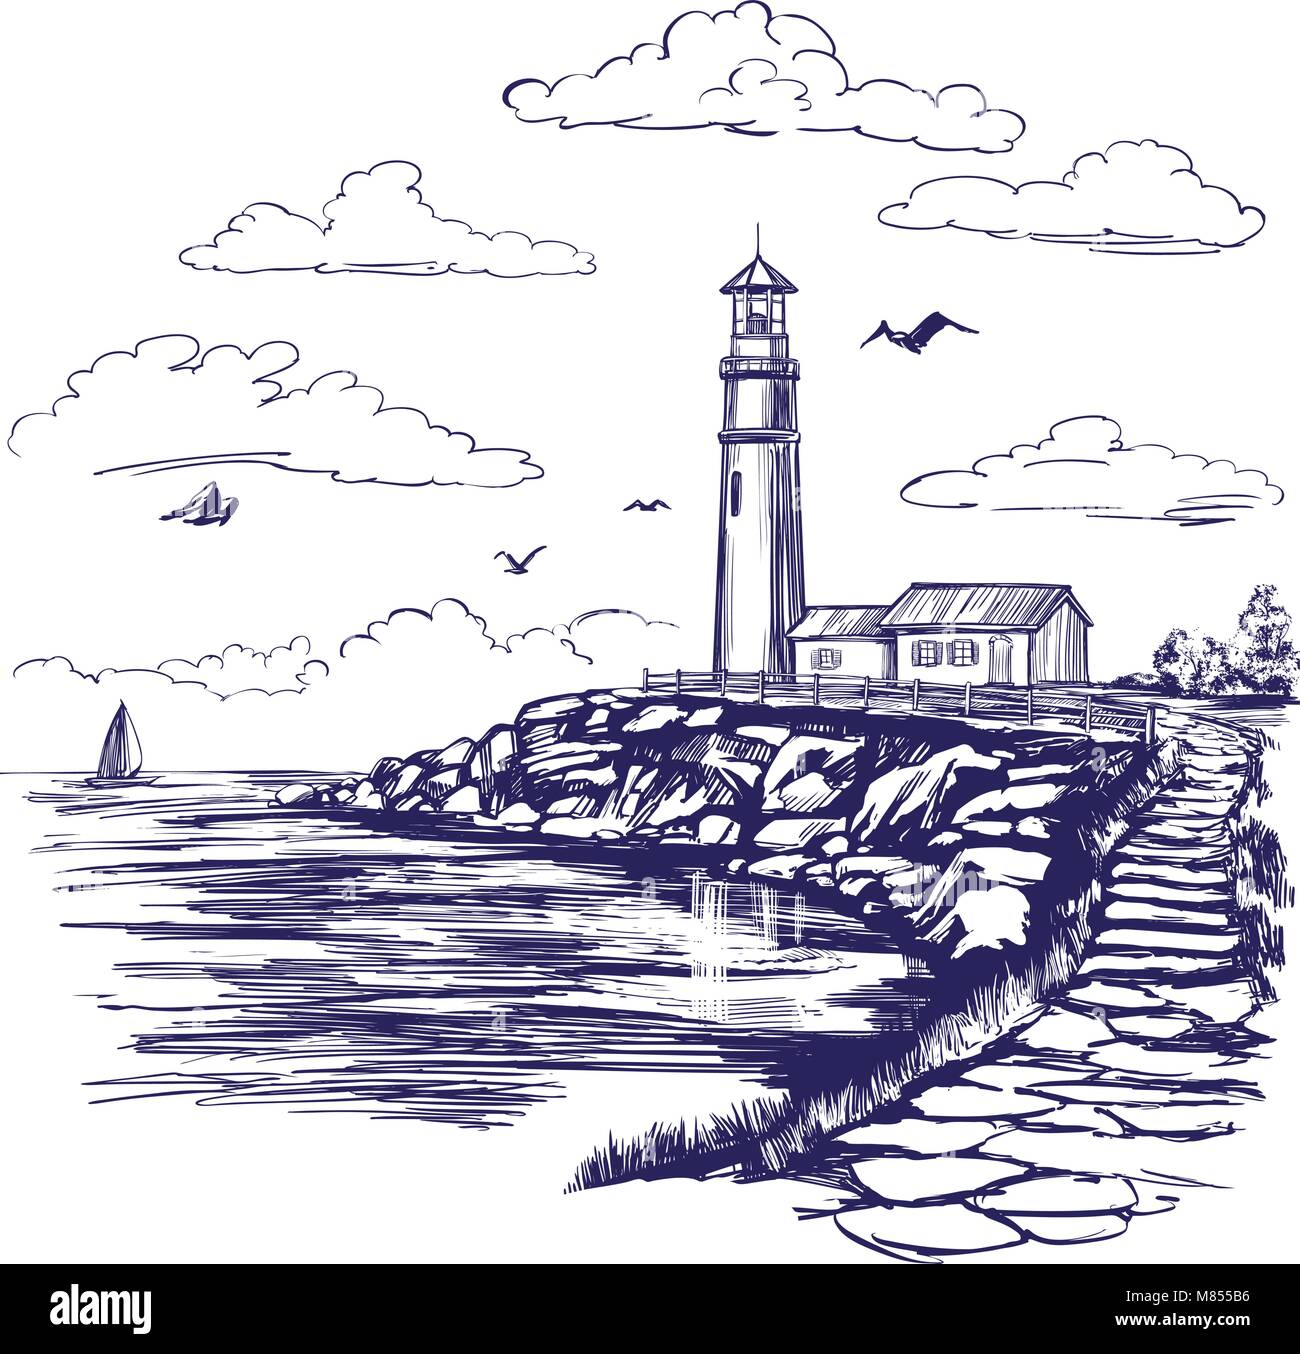 Leuchtturm und das Meer Landschaft Hand gezeichnet Vektor-illustration realistische Skizze Stock Vektor